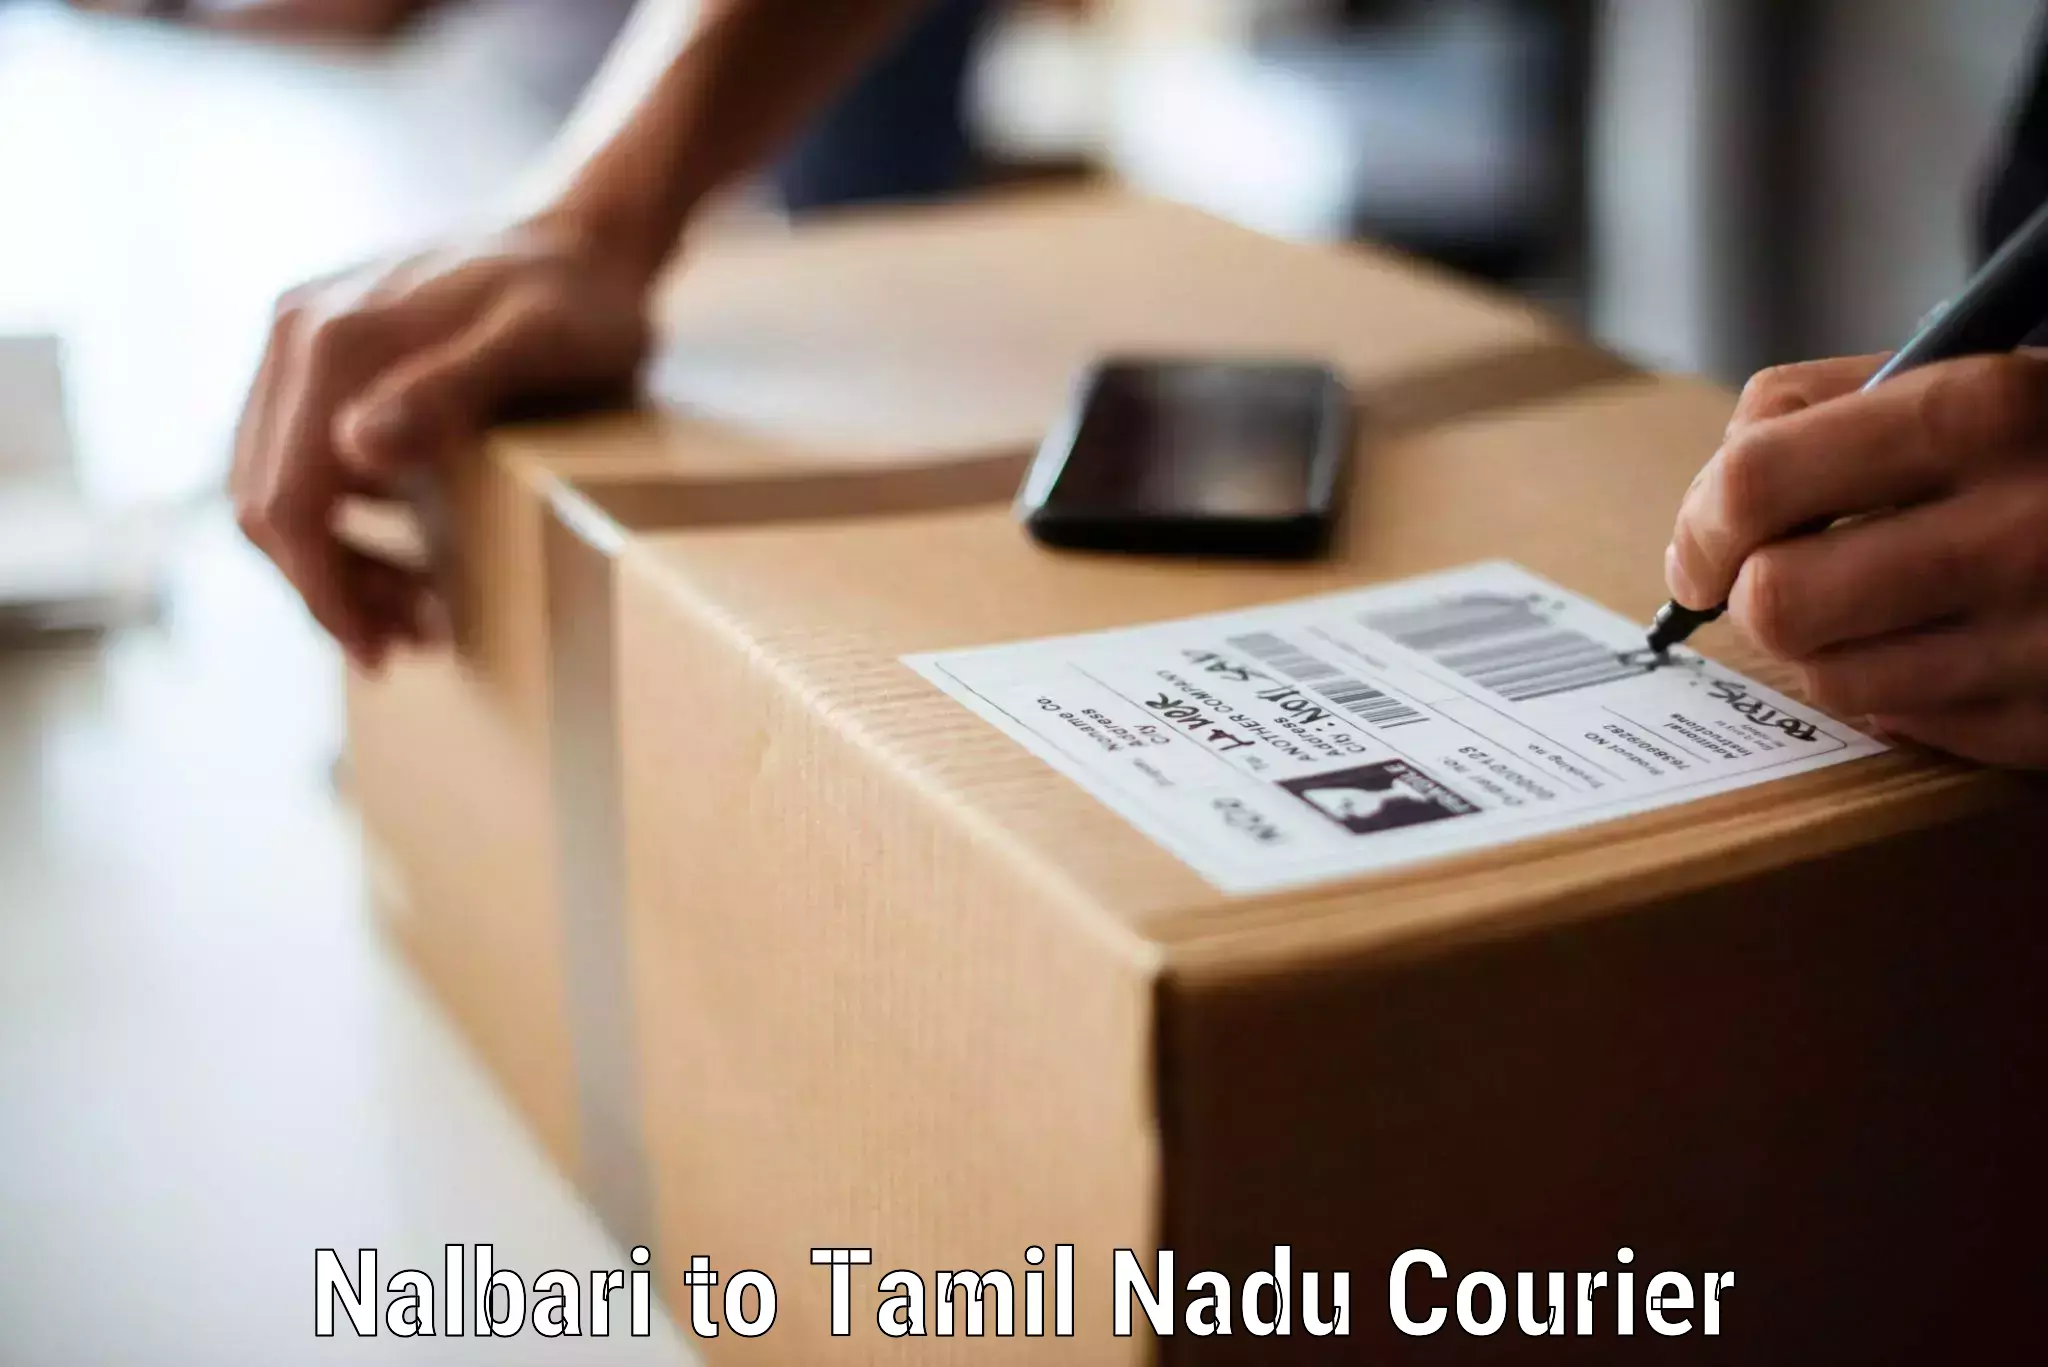 Household goods transporters Nalbari to Ranipet